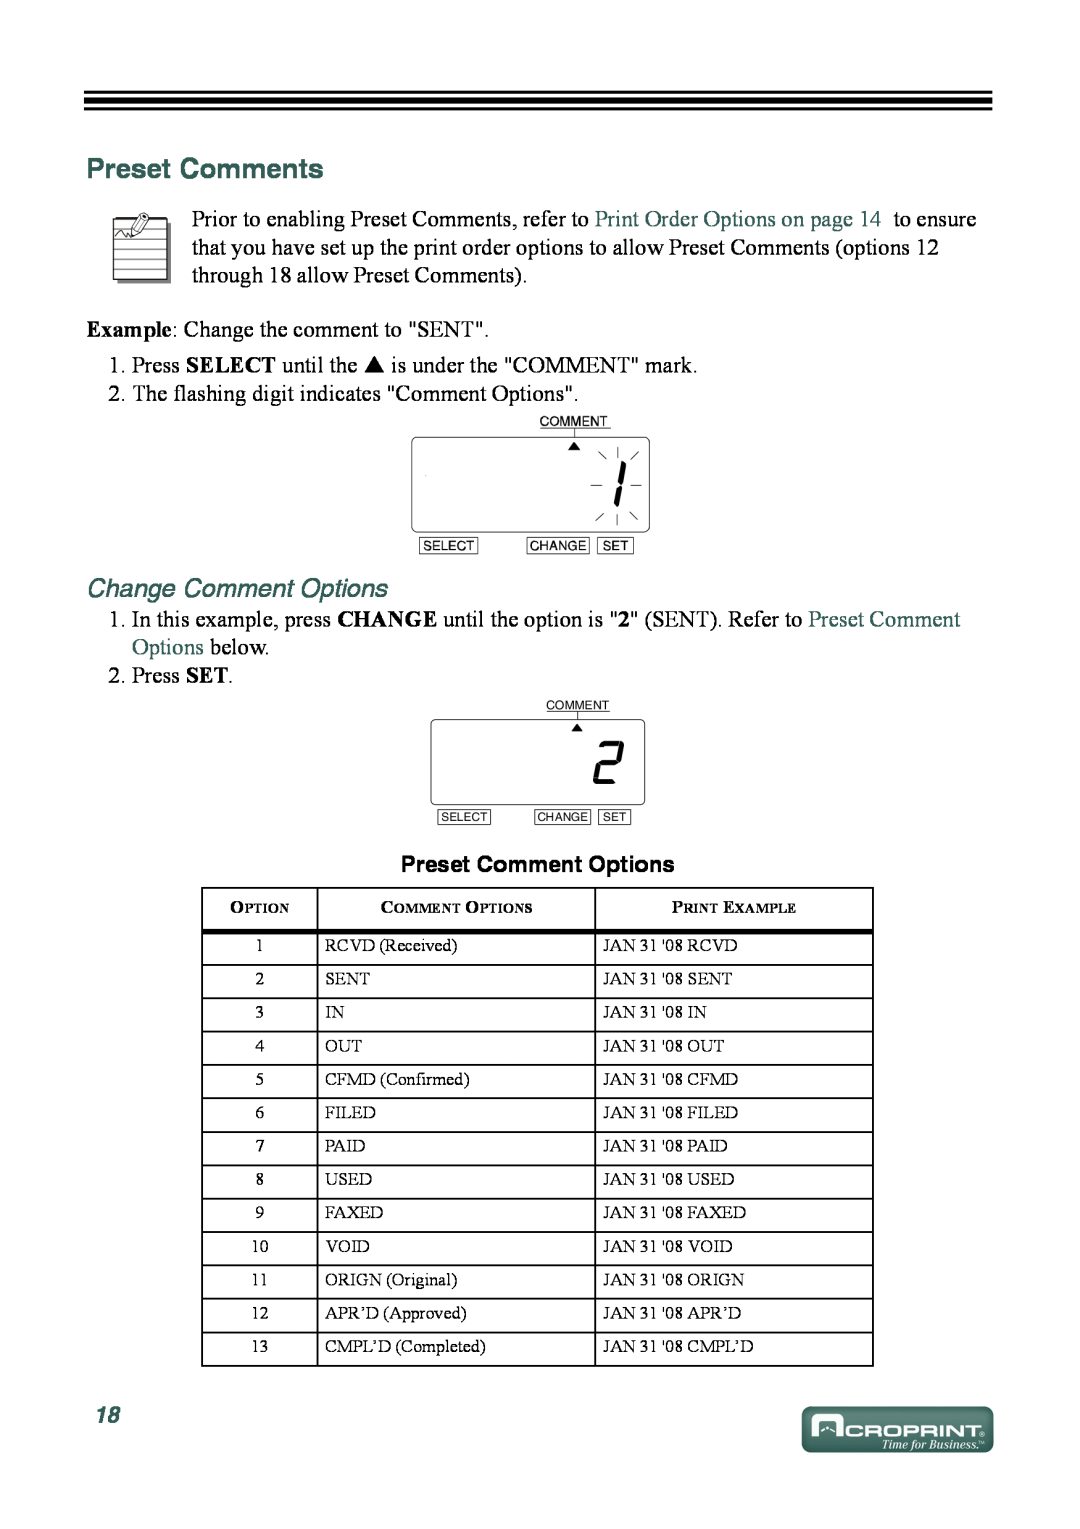 Acroprint ES700 user manual Preset Comments, Change Comment Options, Preset Comment Options 